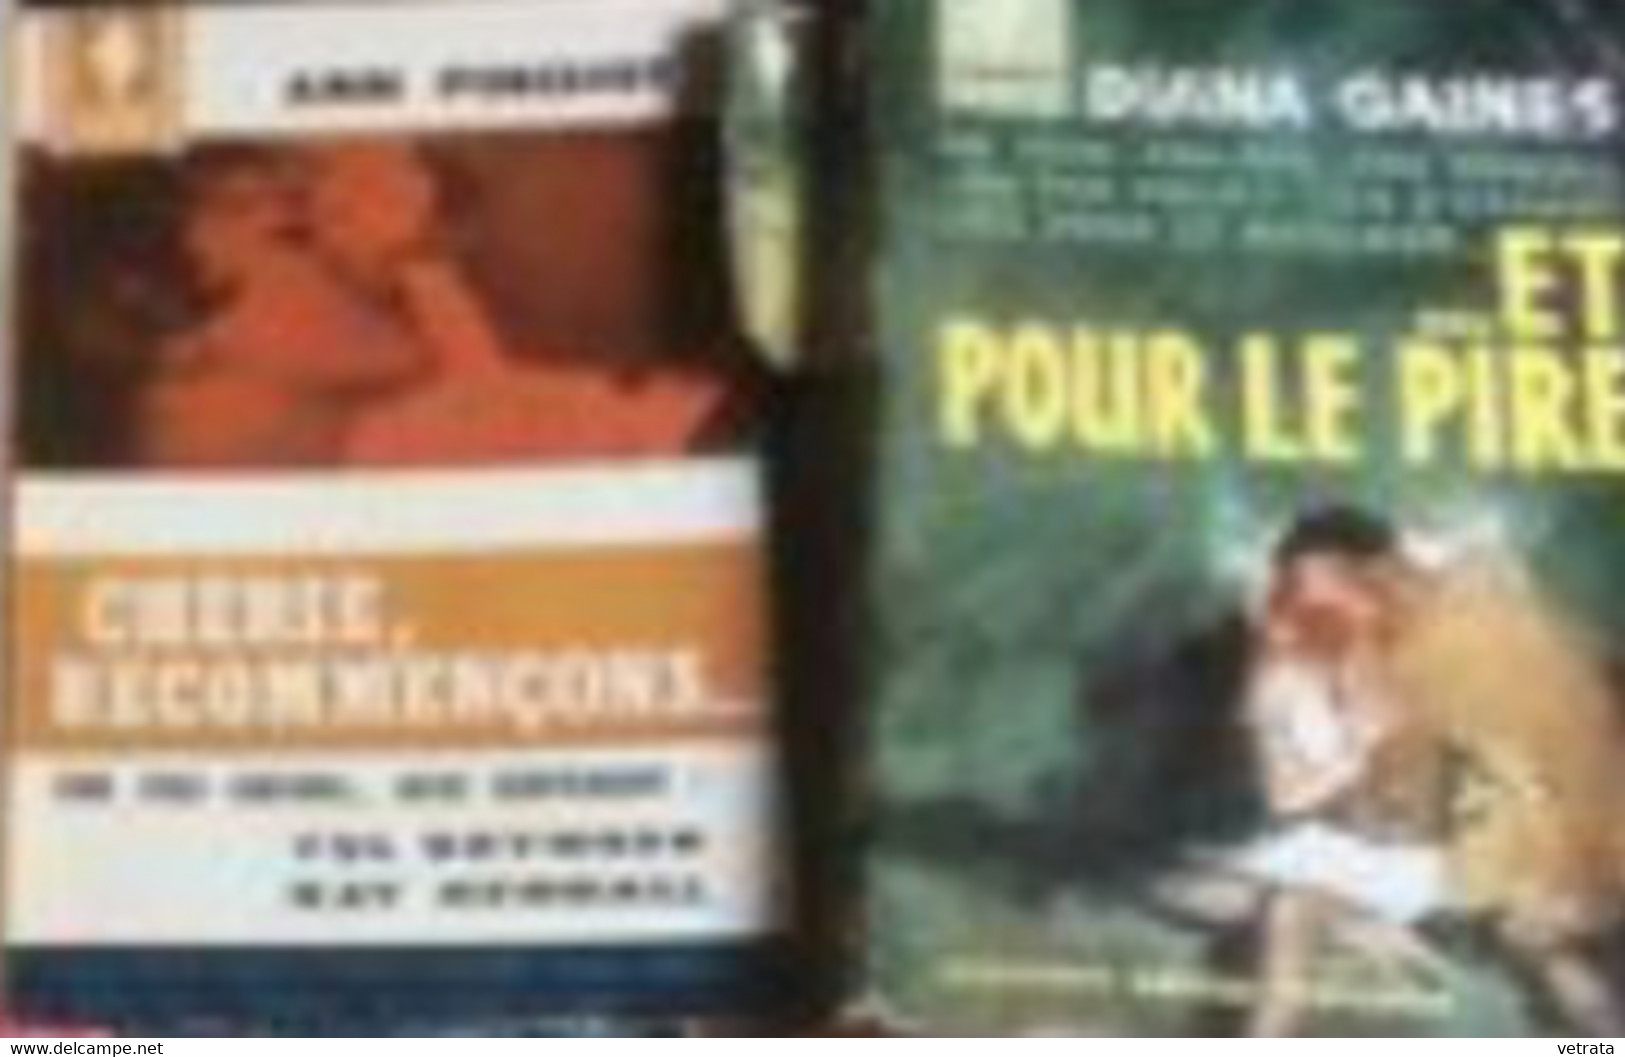 5 livres Marabout : E. Forbes, Paradise / F. Yerby, Dilemme Du Dr Childers / J. Lee, En Lettres De Feu / A. Pinchot, Ché - Paquete De Libros